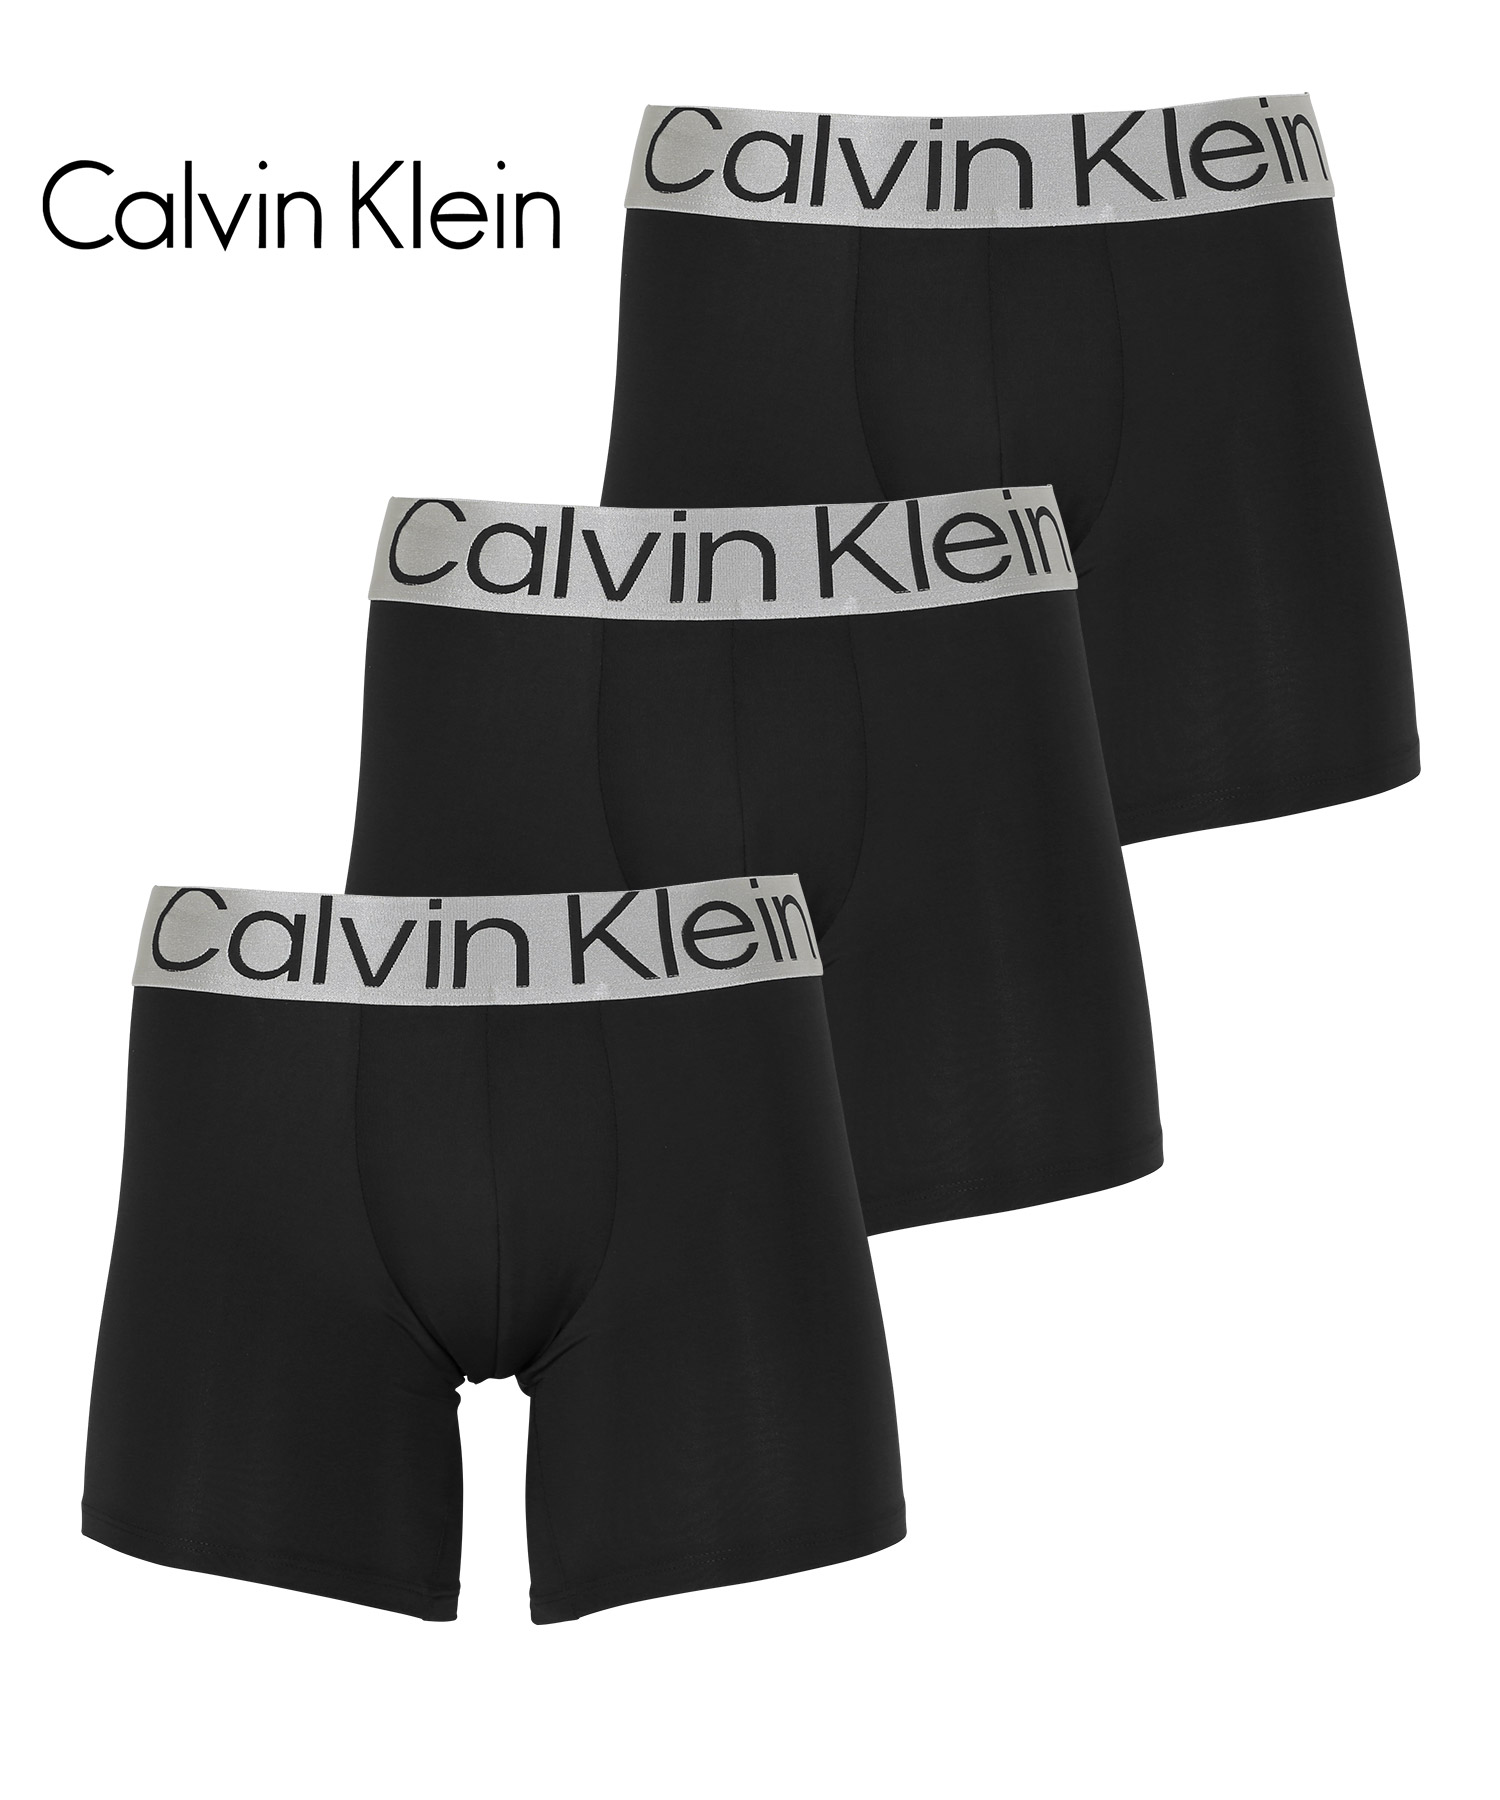 カルバンクライン ボクサーパンツ 3枚セット Calvin Klein メンズ 下着 